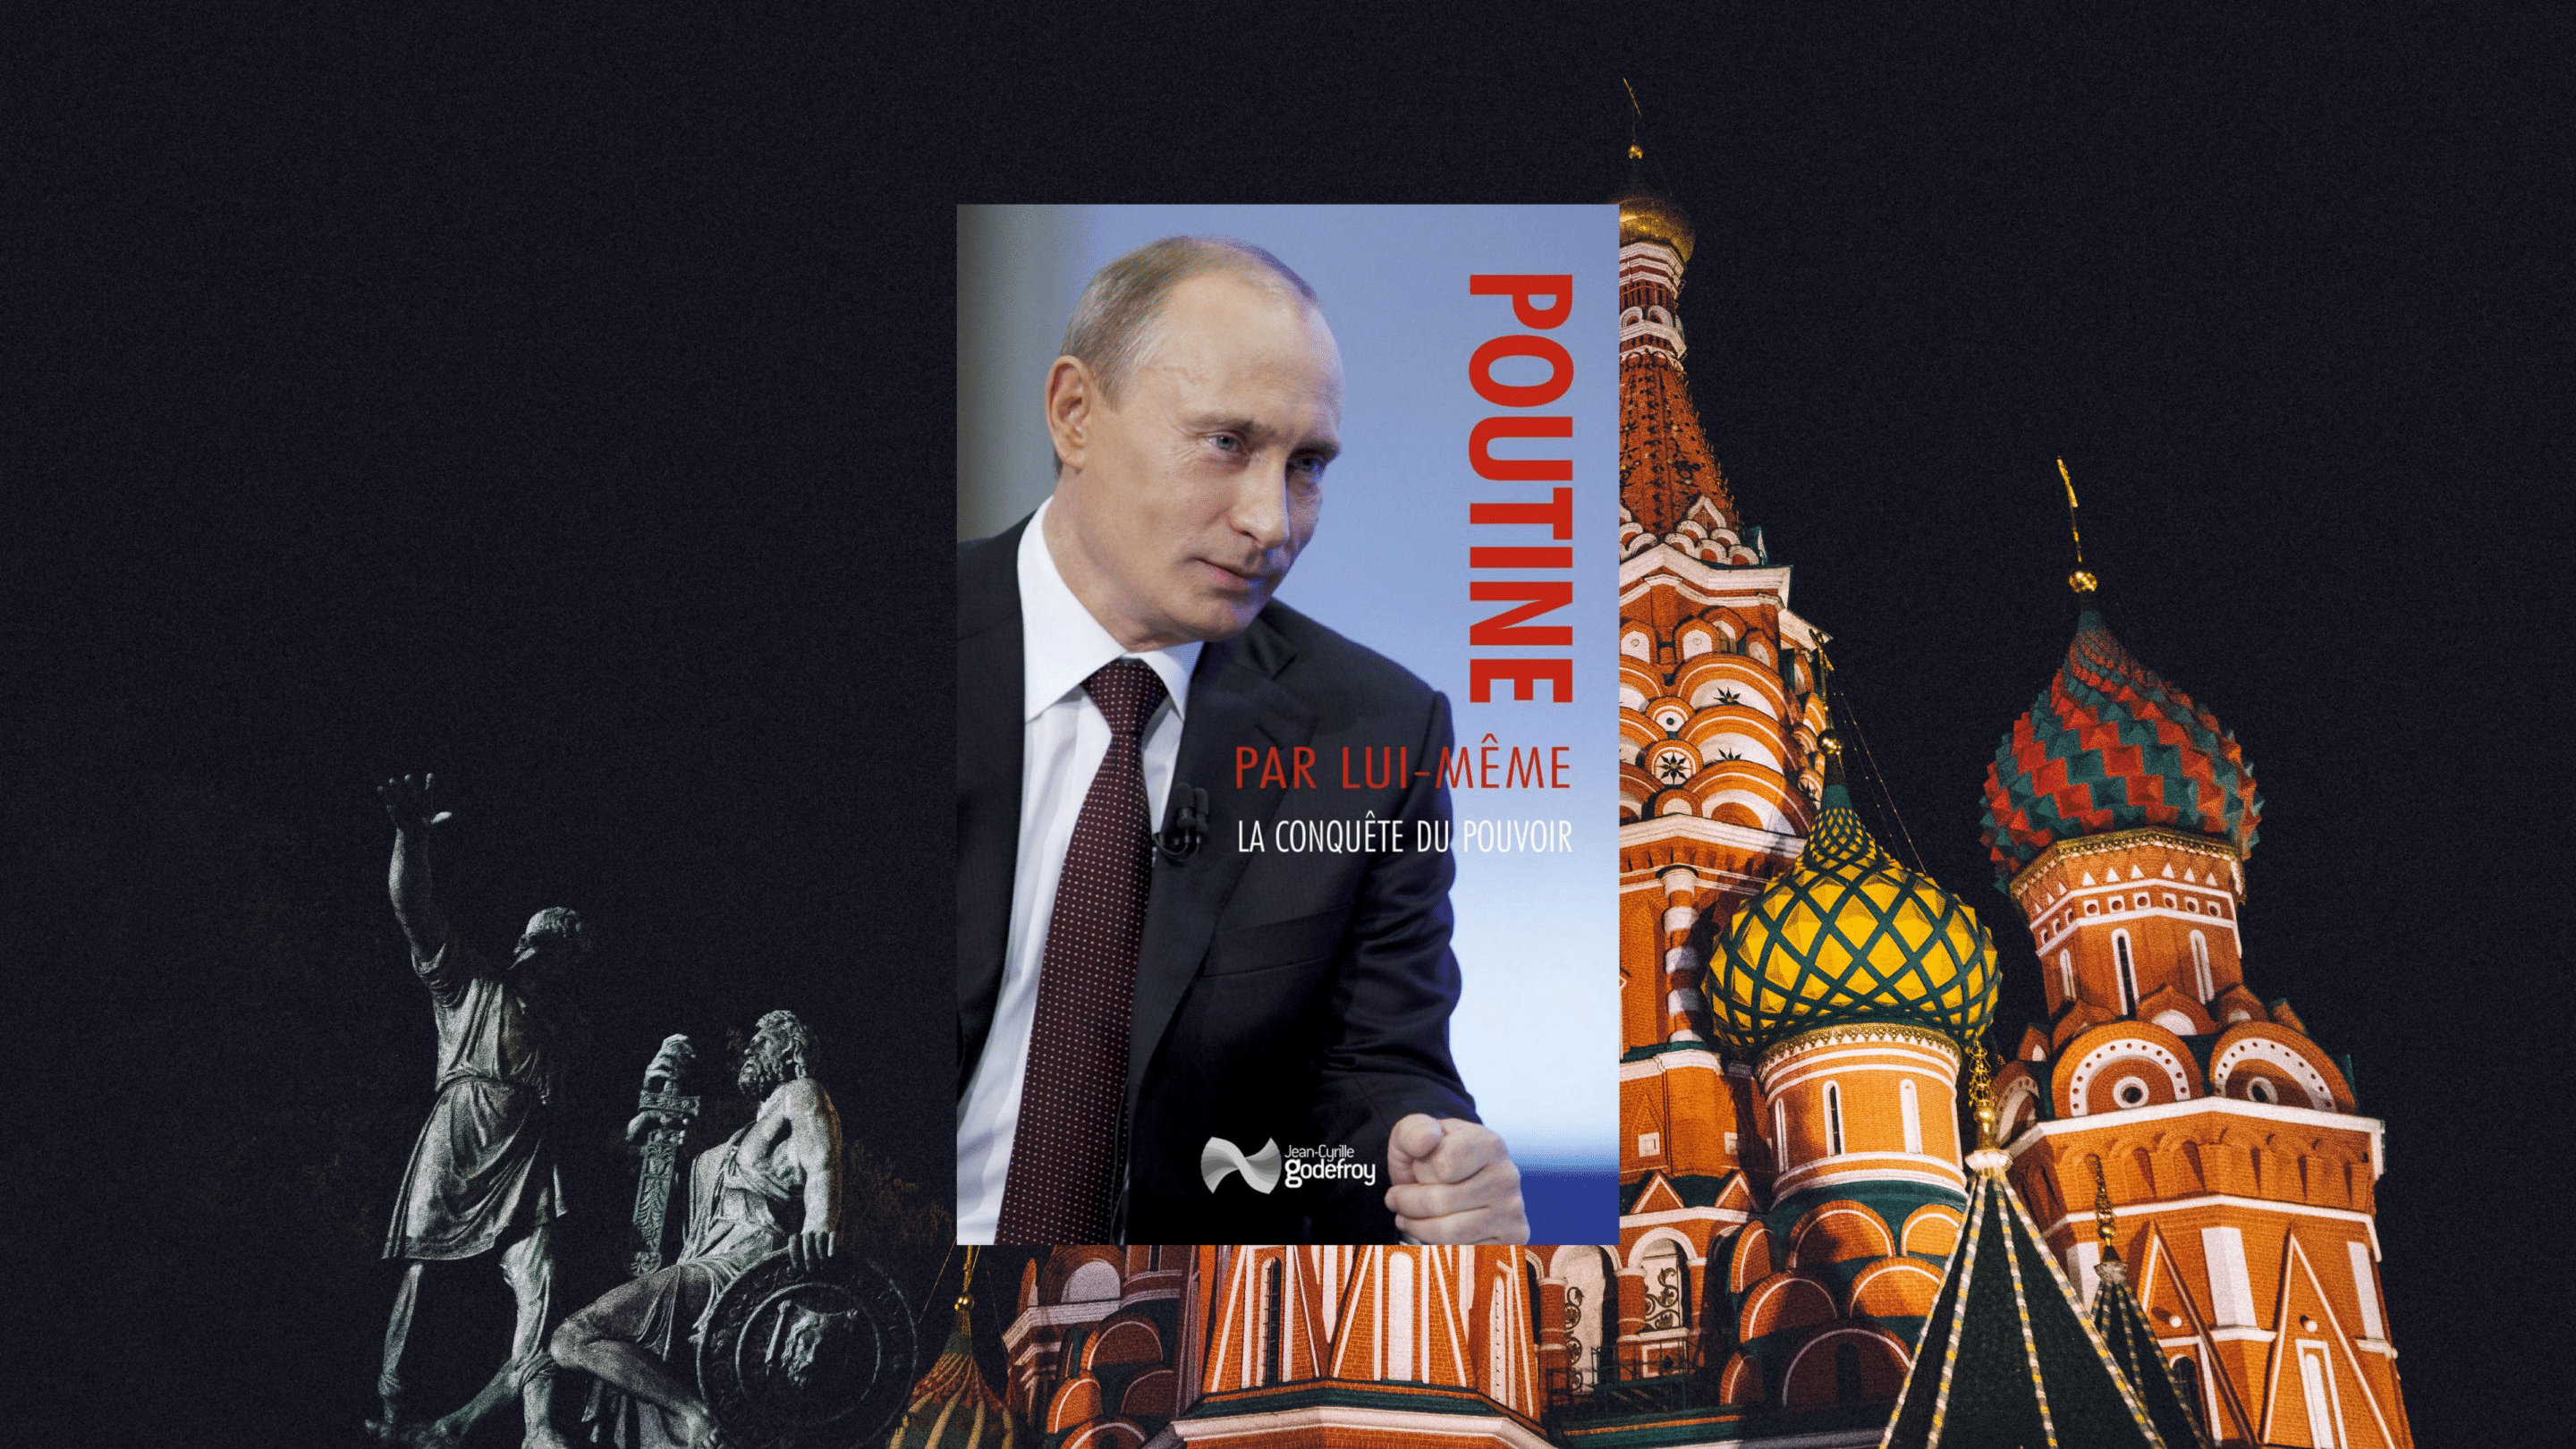 Poutine par lui-même. La conquête, du pouvoir